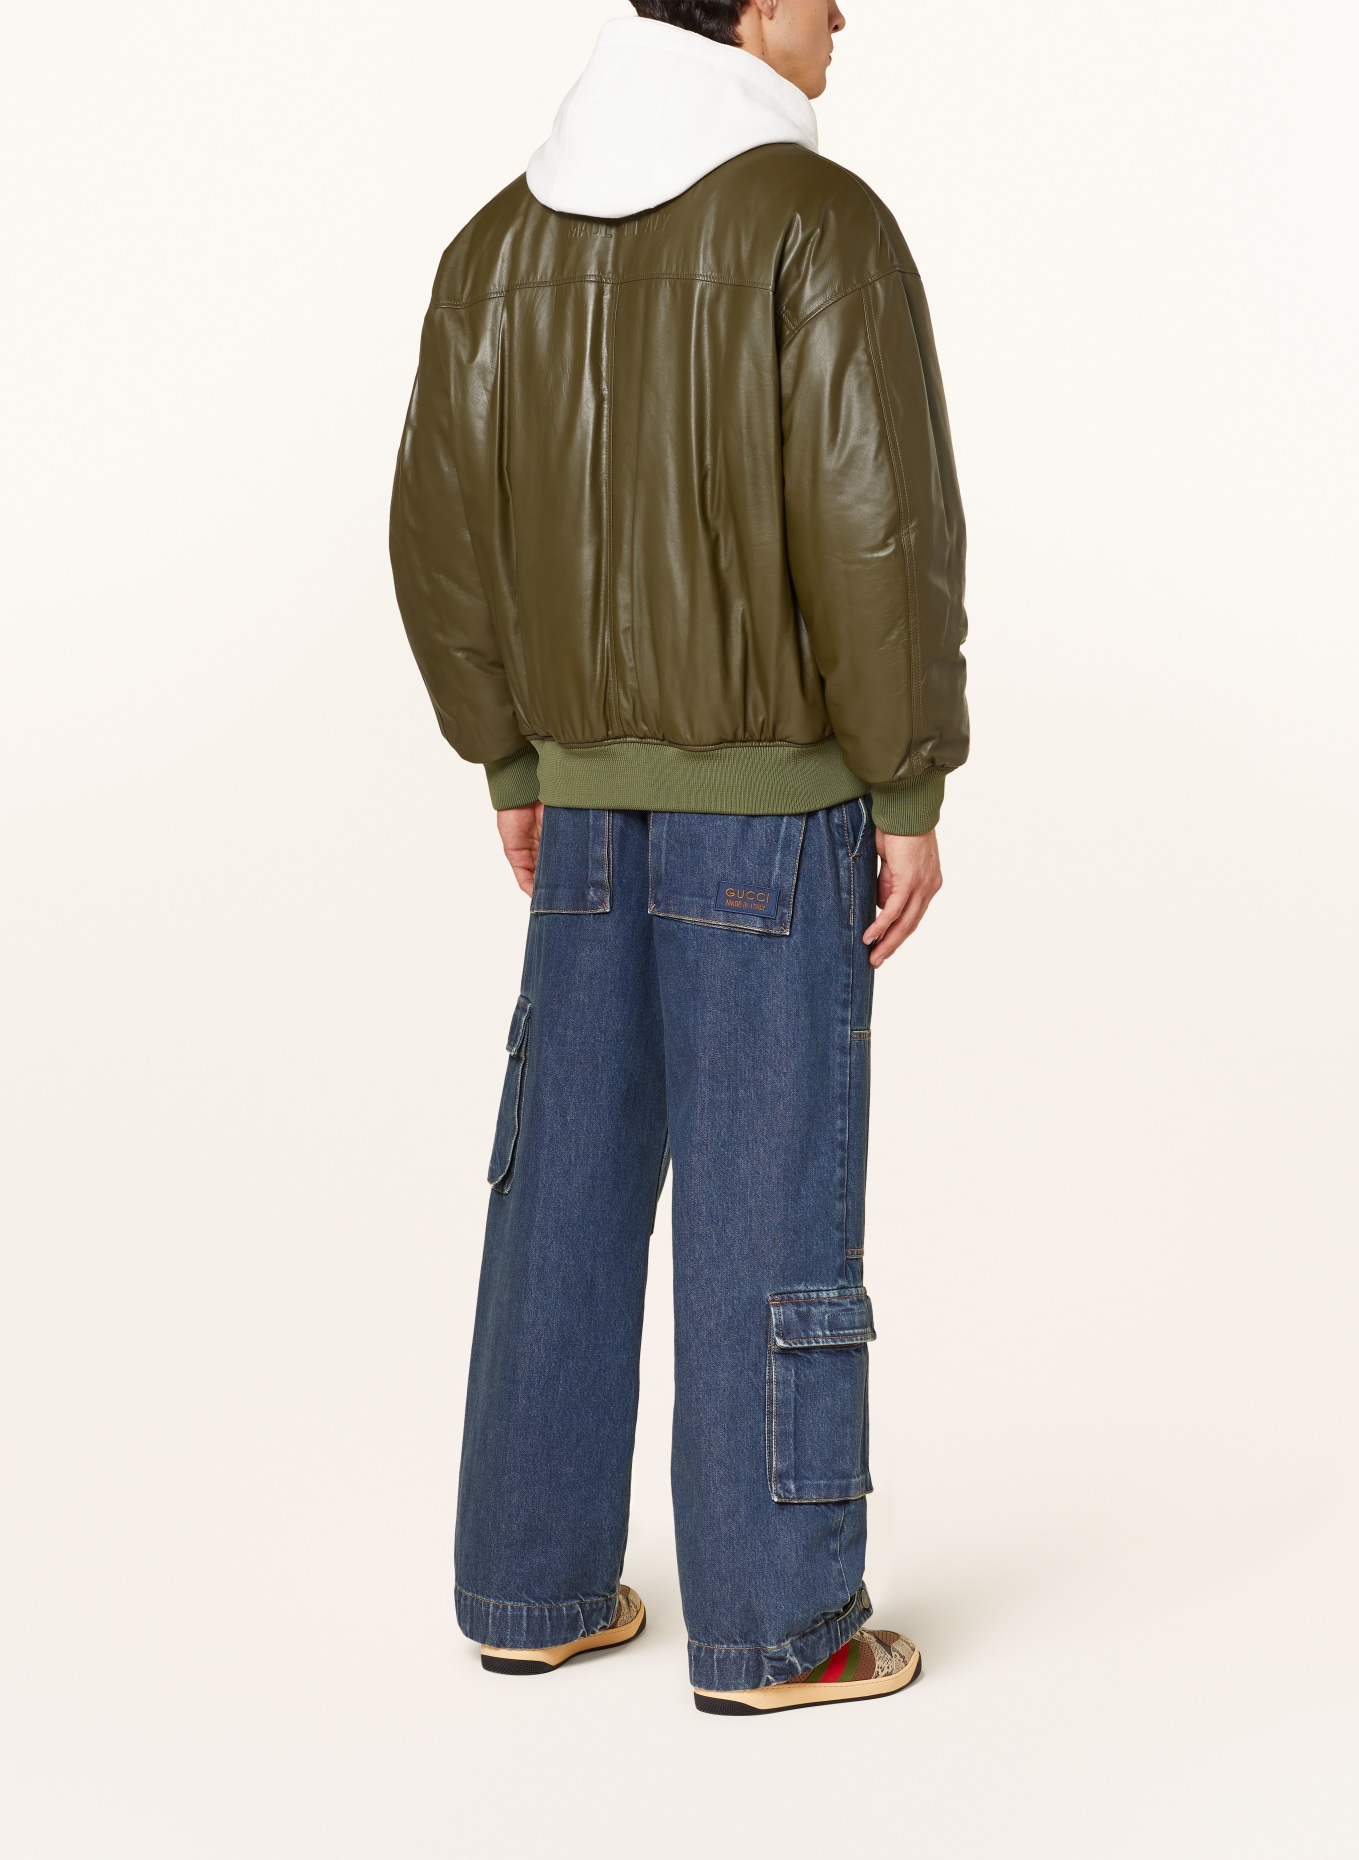 GUCCI Leather bomber jacket, Color: KHAKI (Image 3)